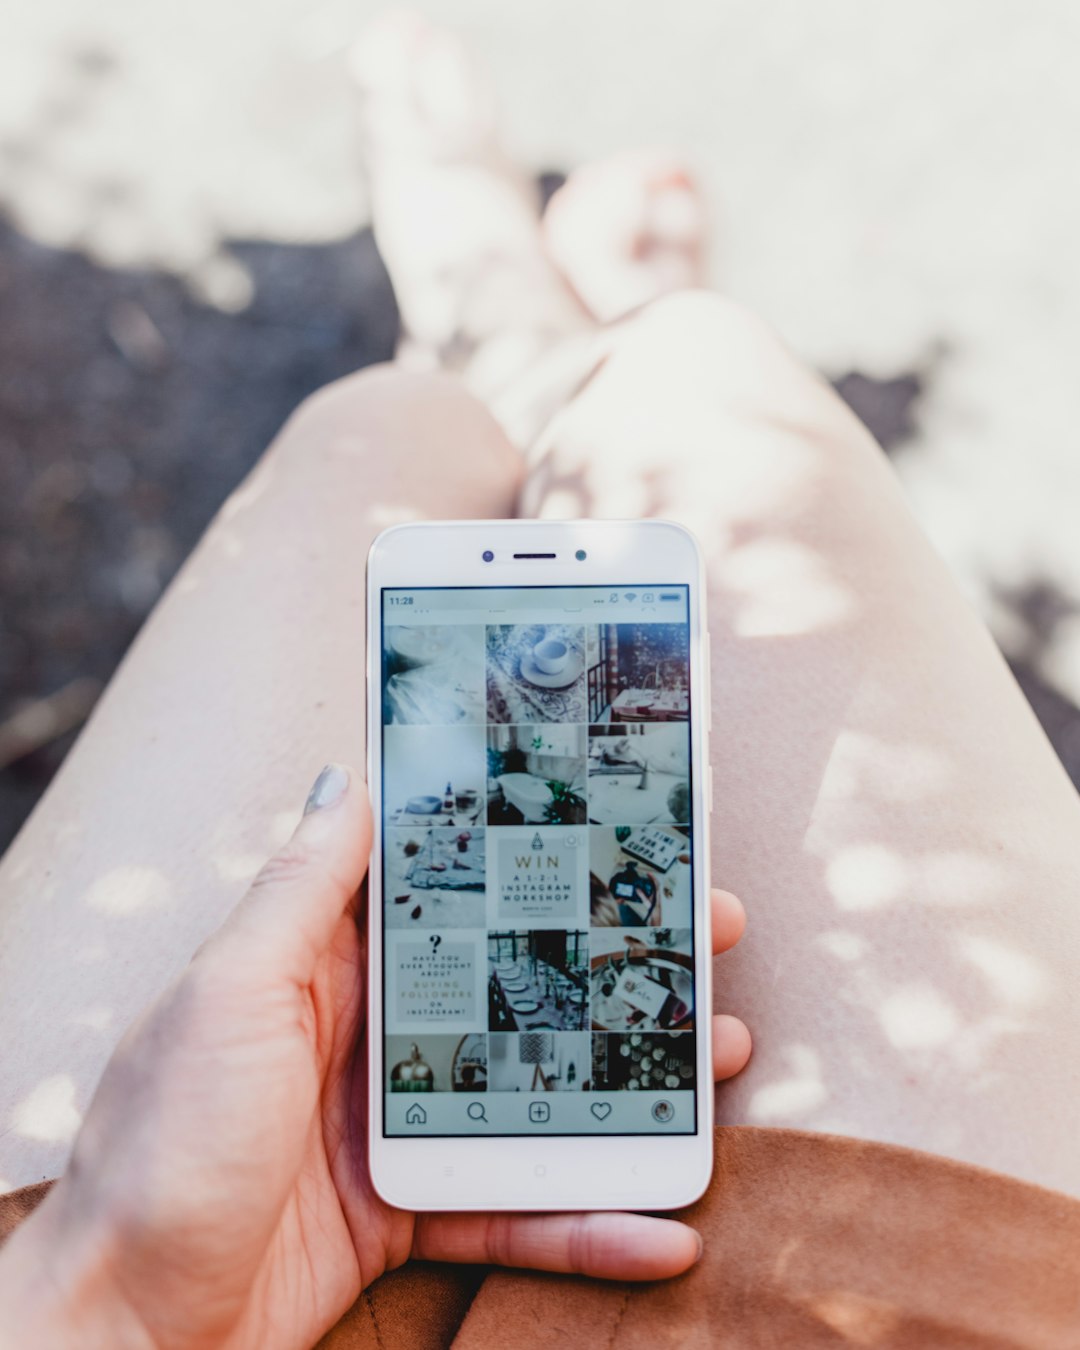 Créer un compte instagram professionnel pour faire connaitre votre activité de praticien